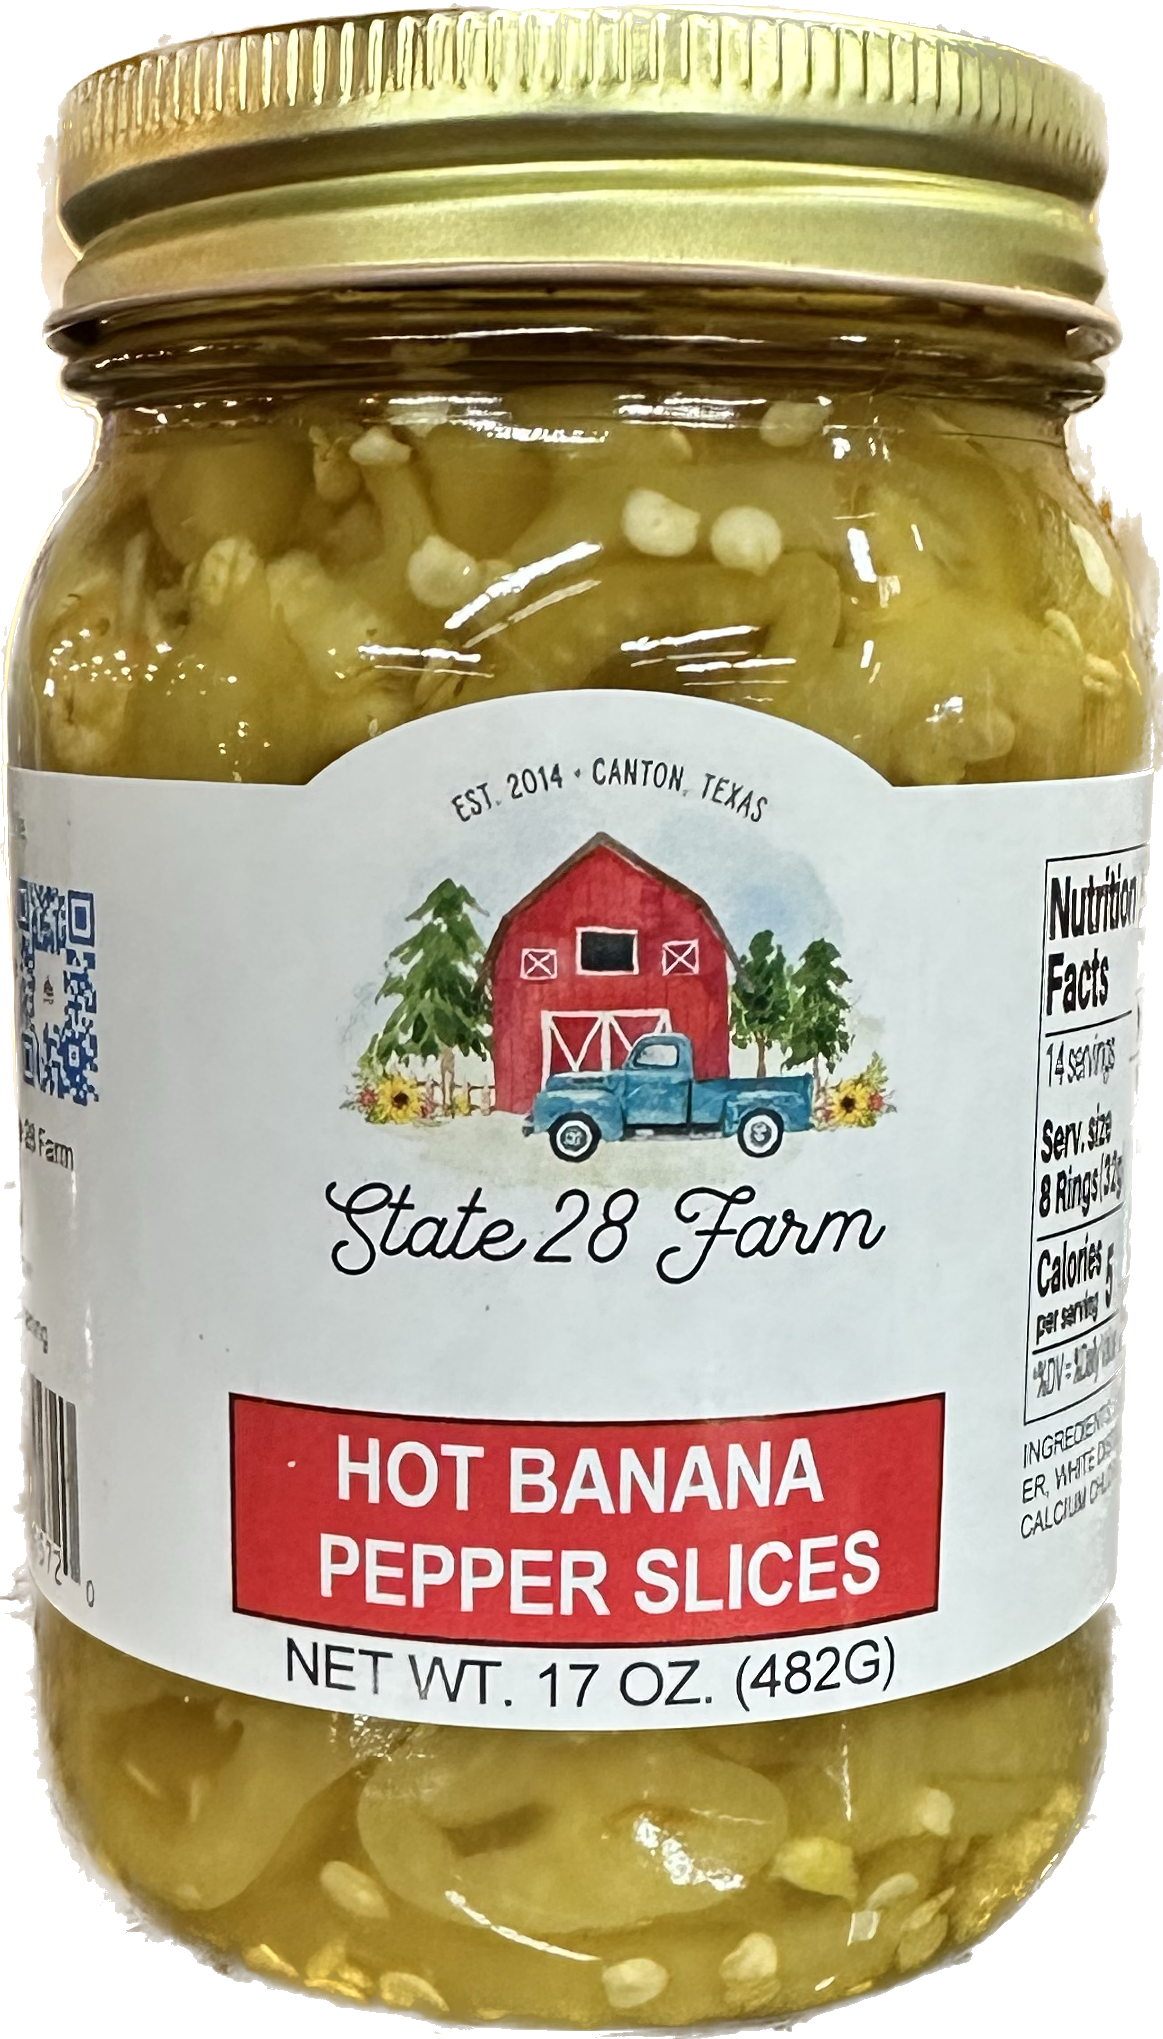 State 28 Farm - Hot Banana Pepper Slices